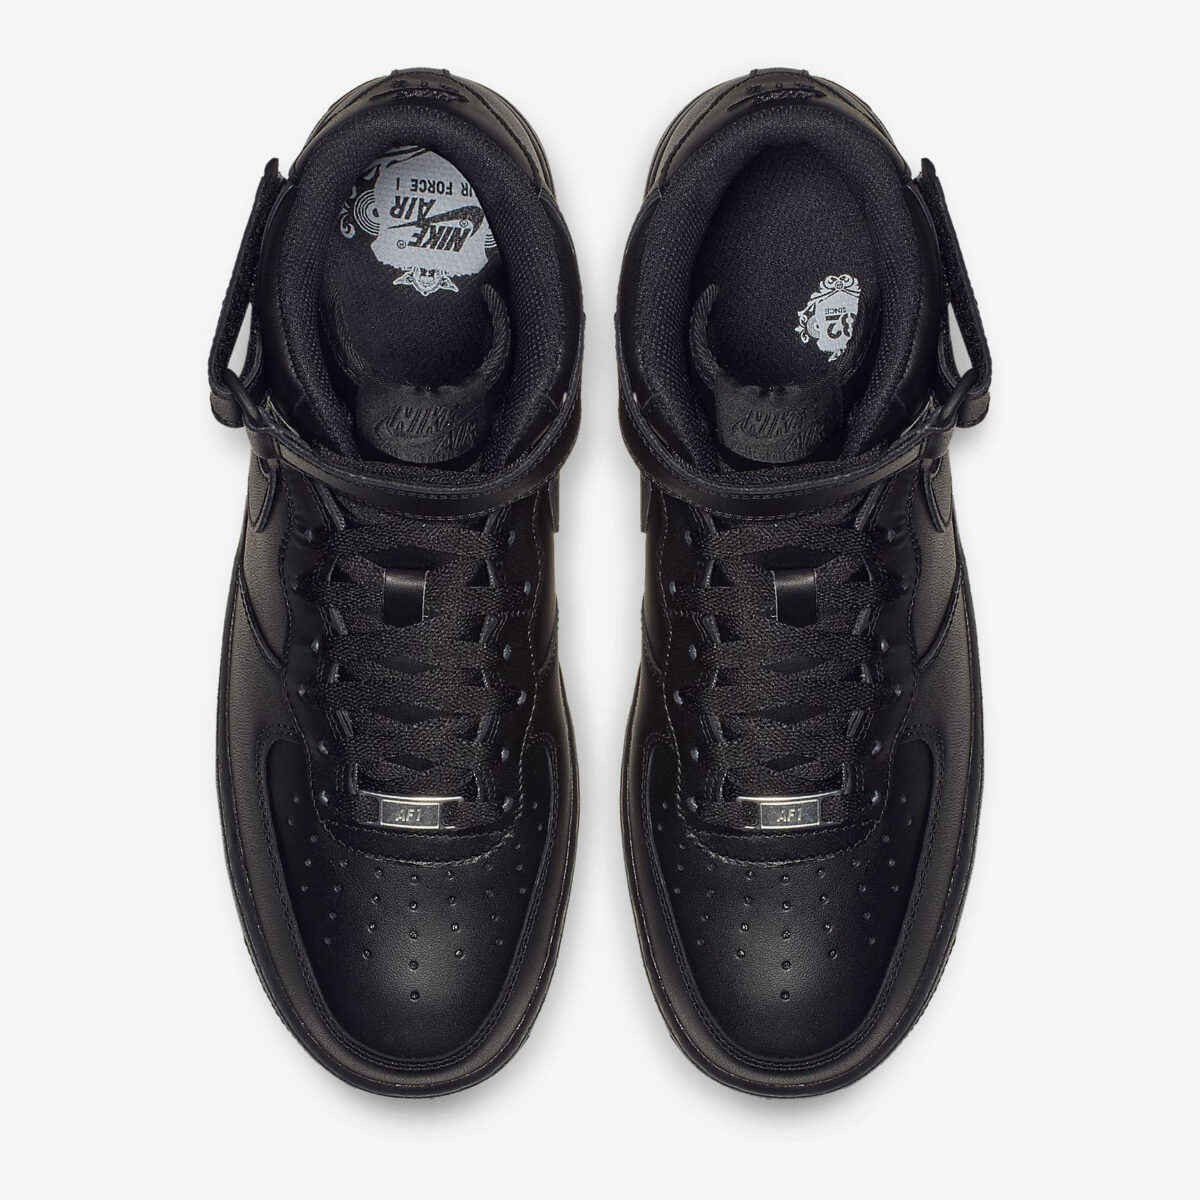 Herren Schuhe Nike Air Force 1 07 Mid schwarz buy